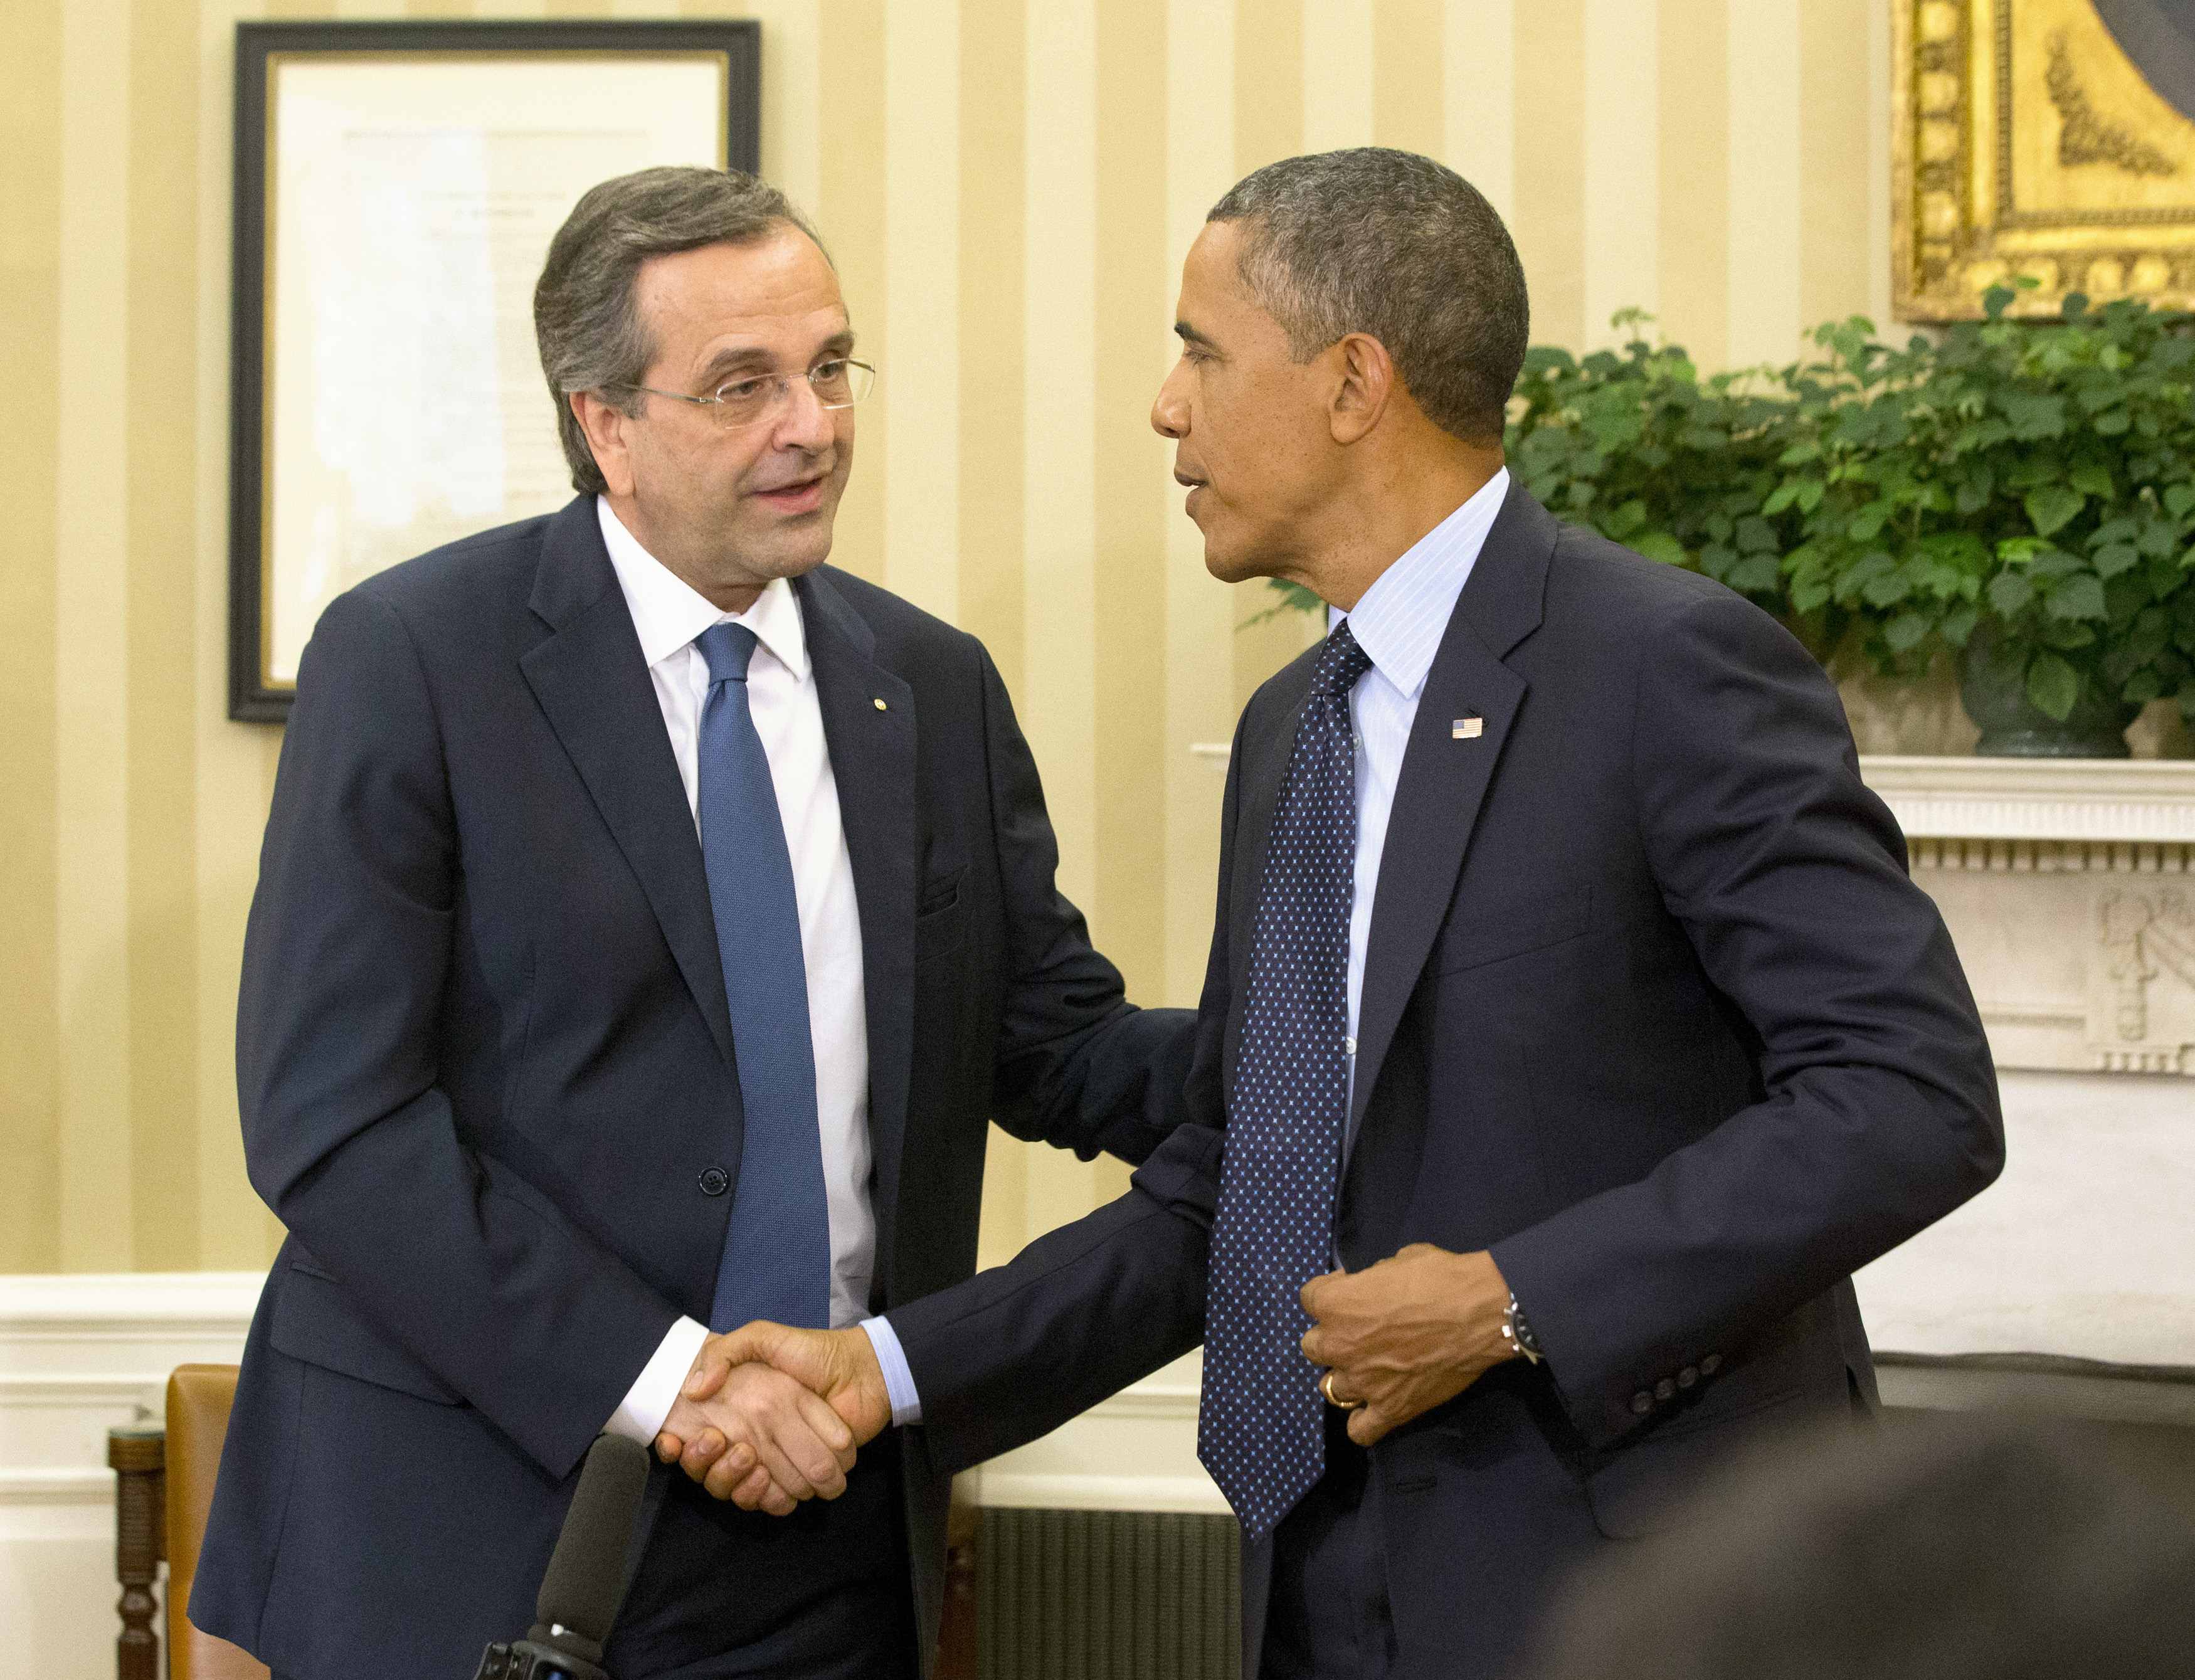 ΦΩΤΟ Reuters - O Aντώνης Σαμαράς ευχαριστεί τον Μπάρακ Ομπάμα για τη συνάντηση που είχαν